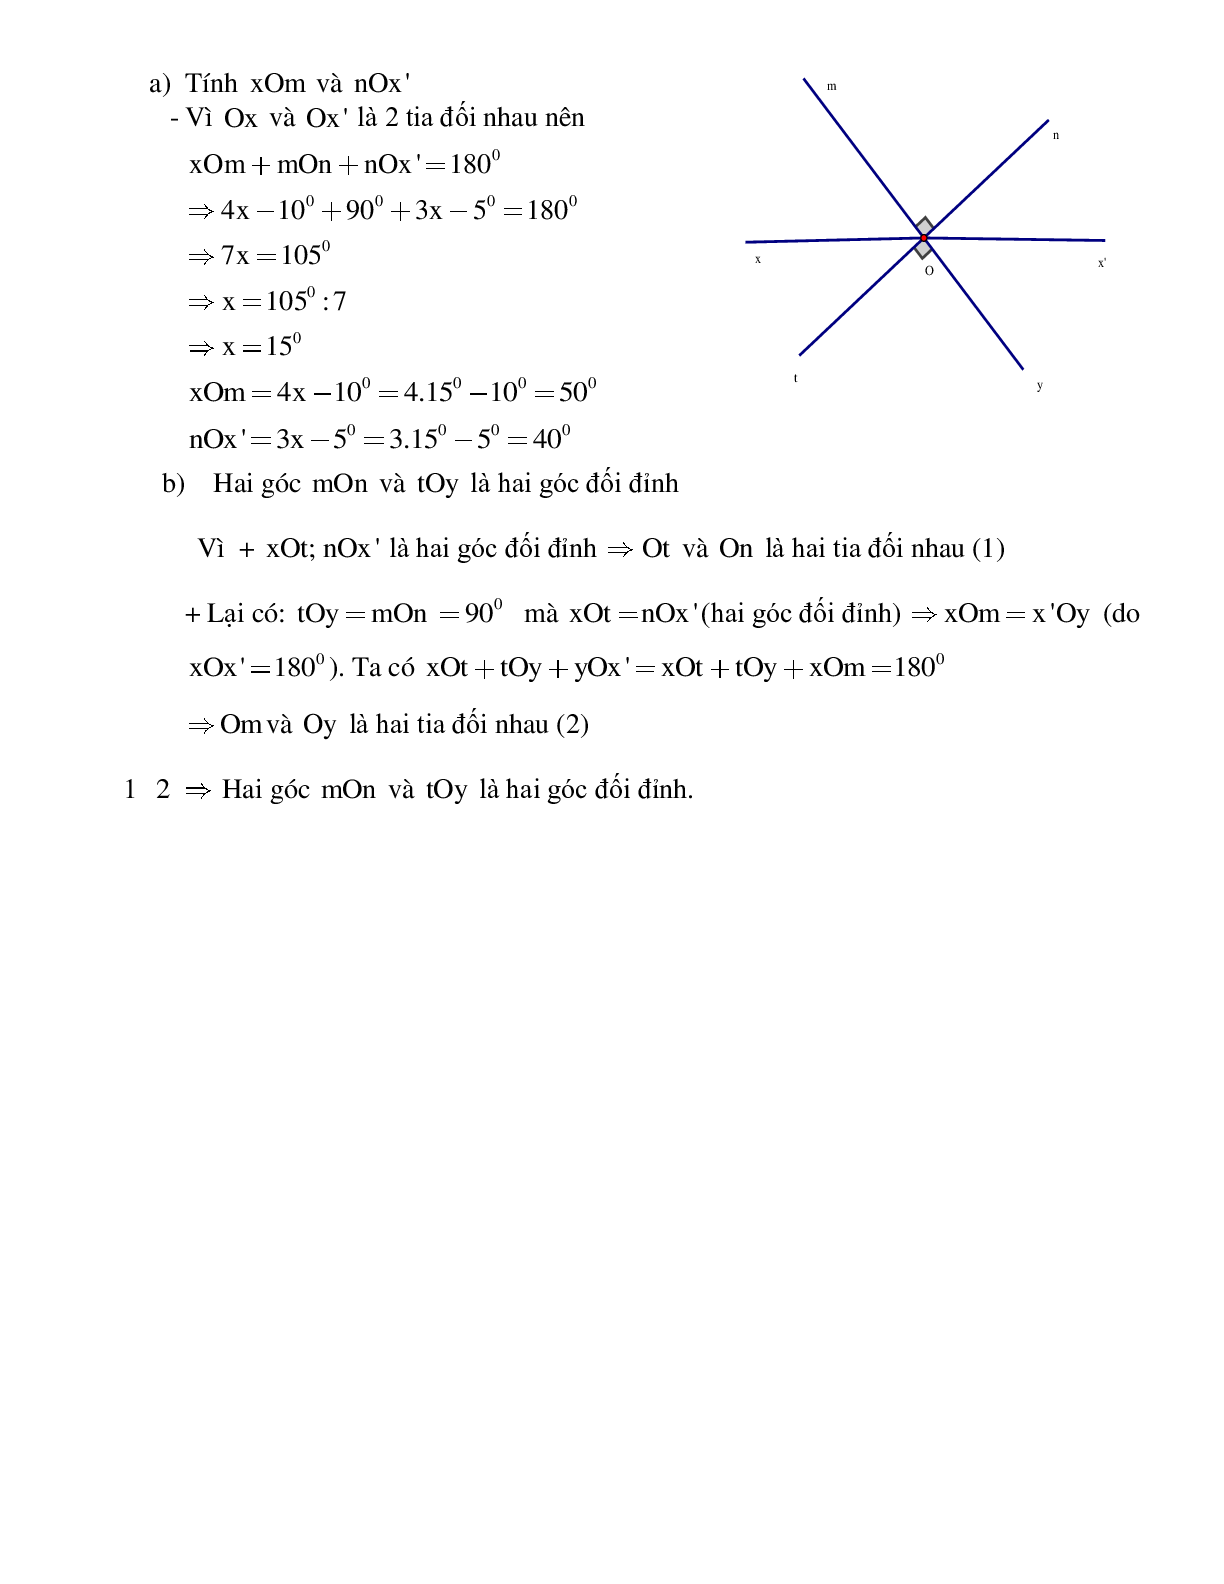 Phiếu bài tập tuần 1 - Toán 7 (trang 4)